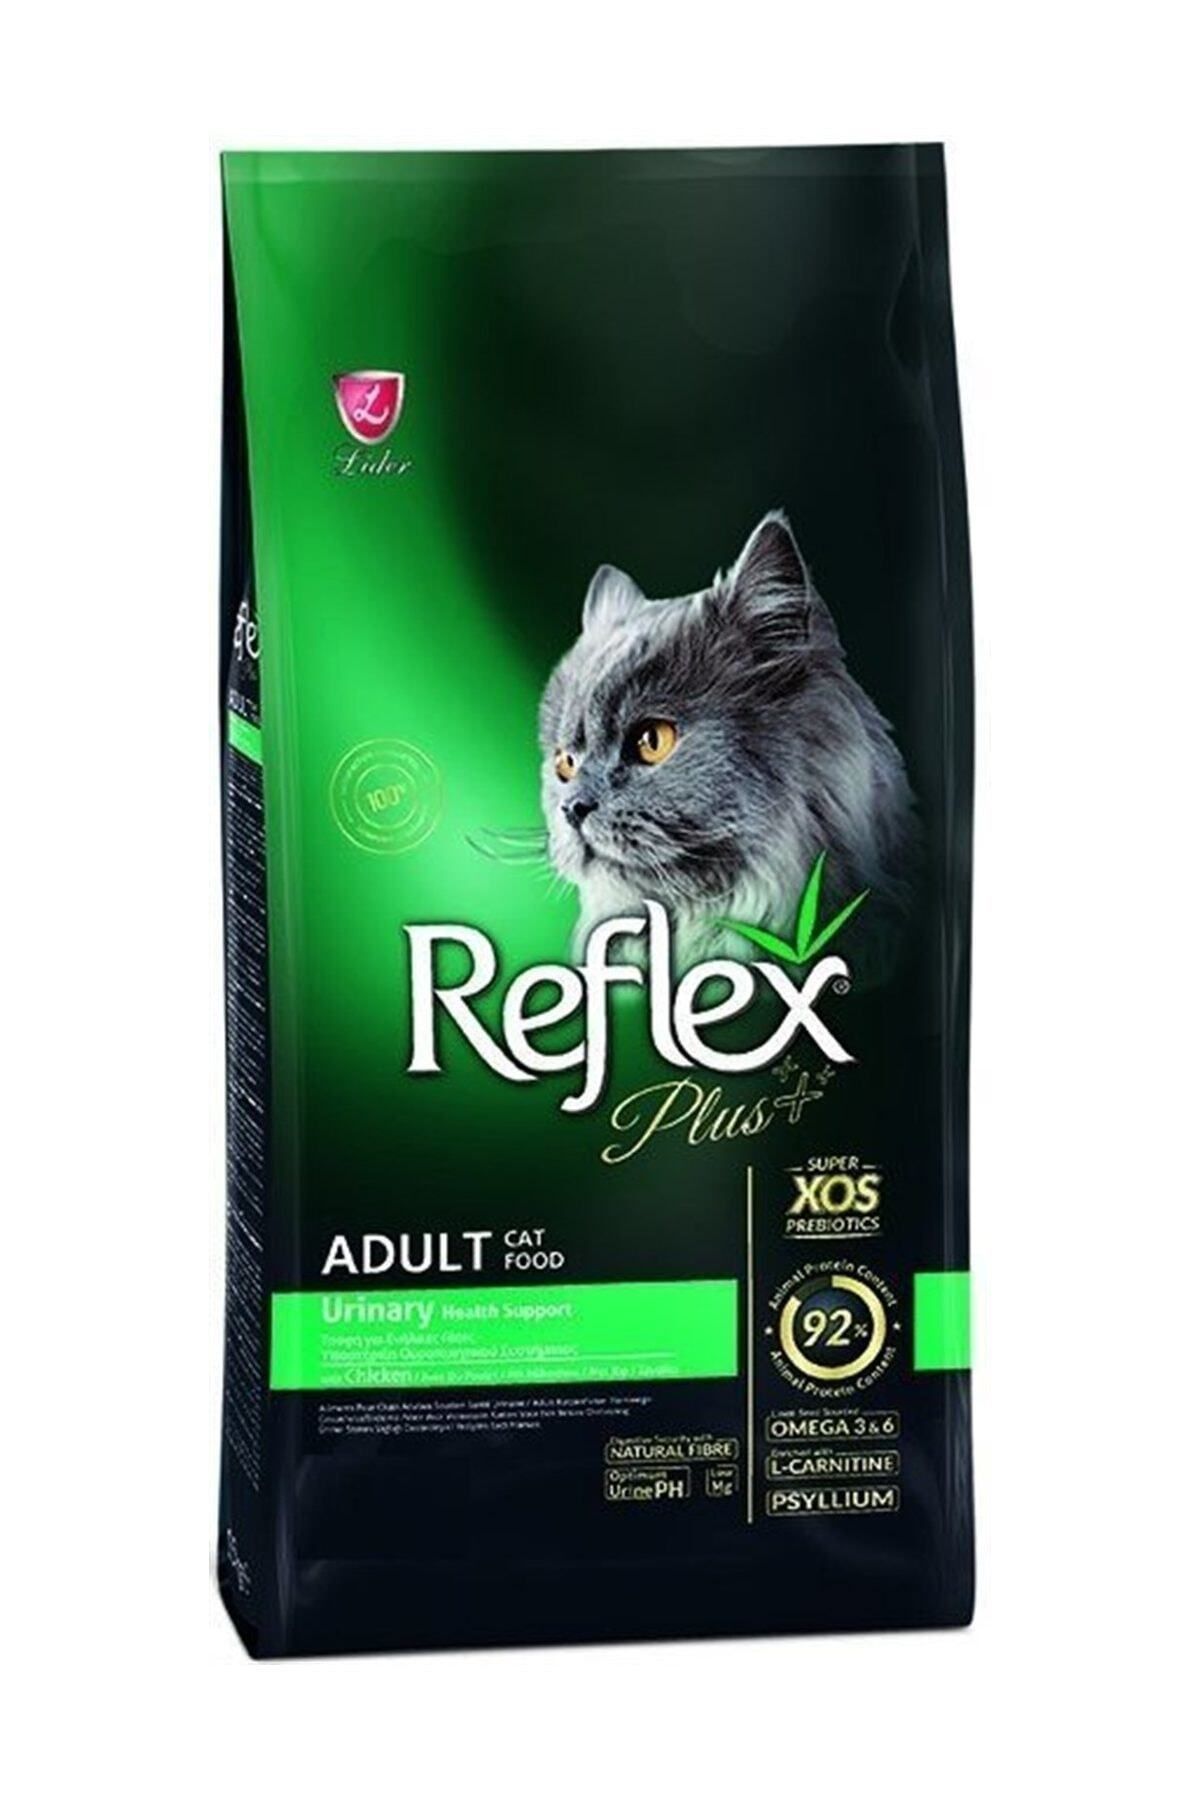 Reflex Urinary Tavuklu Üriner Sistem Destekleyici Yetişkin Kedi Maması 1.5 Kg